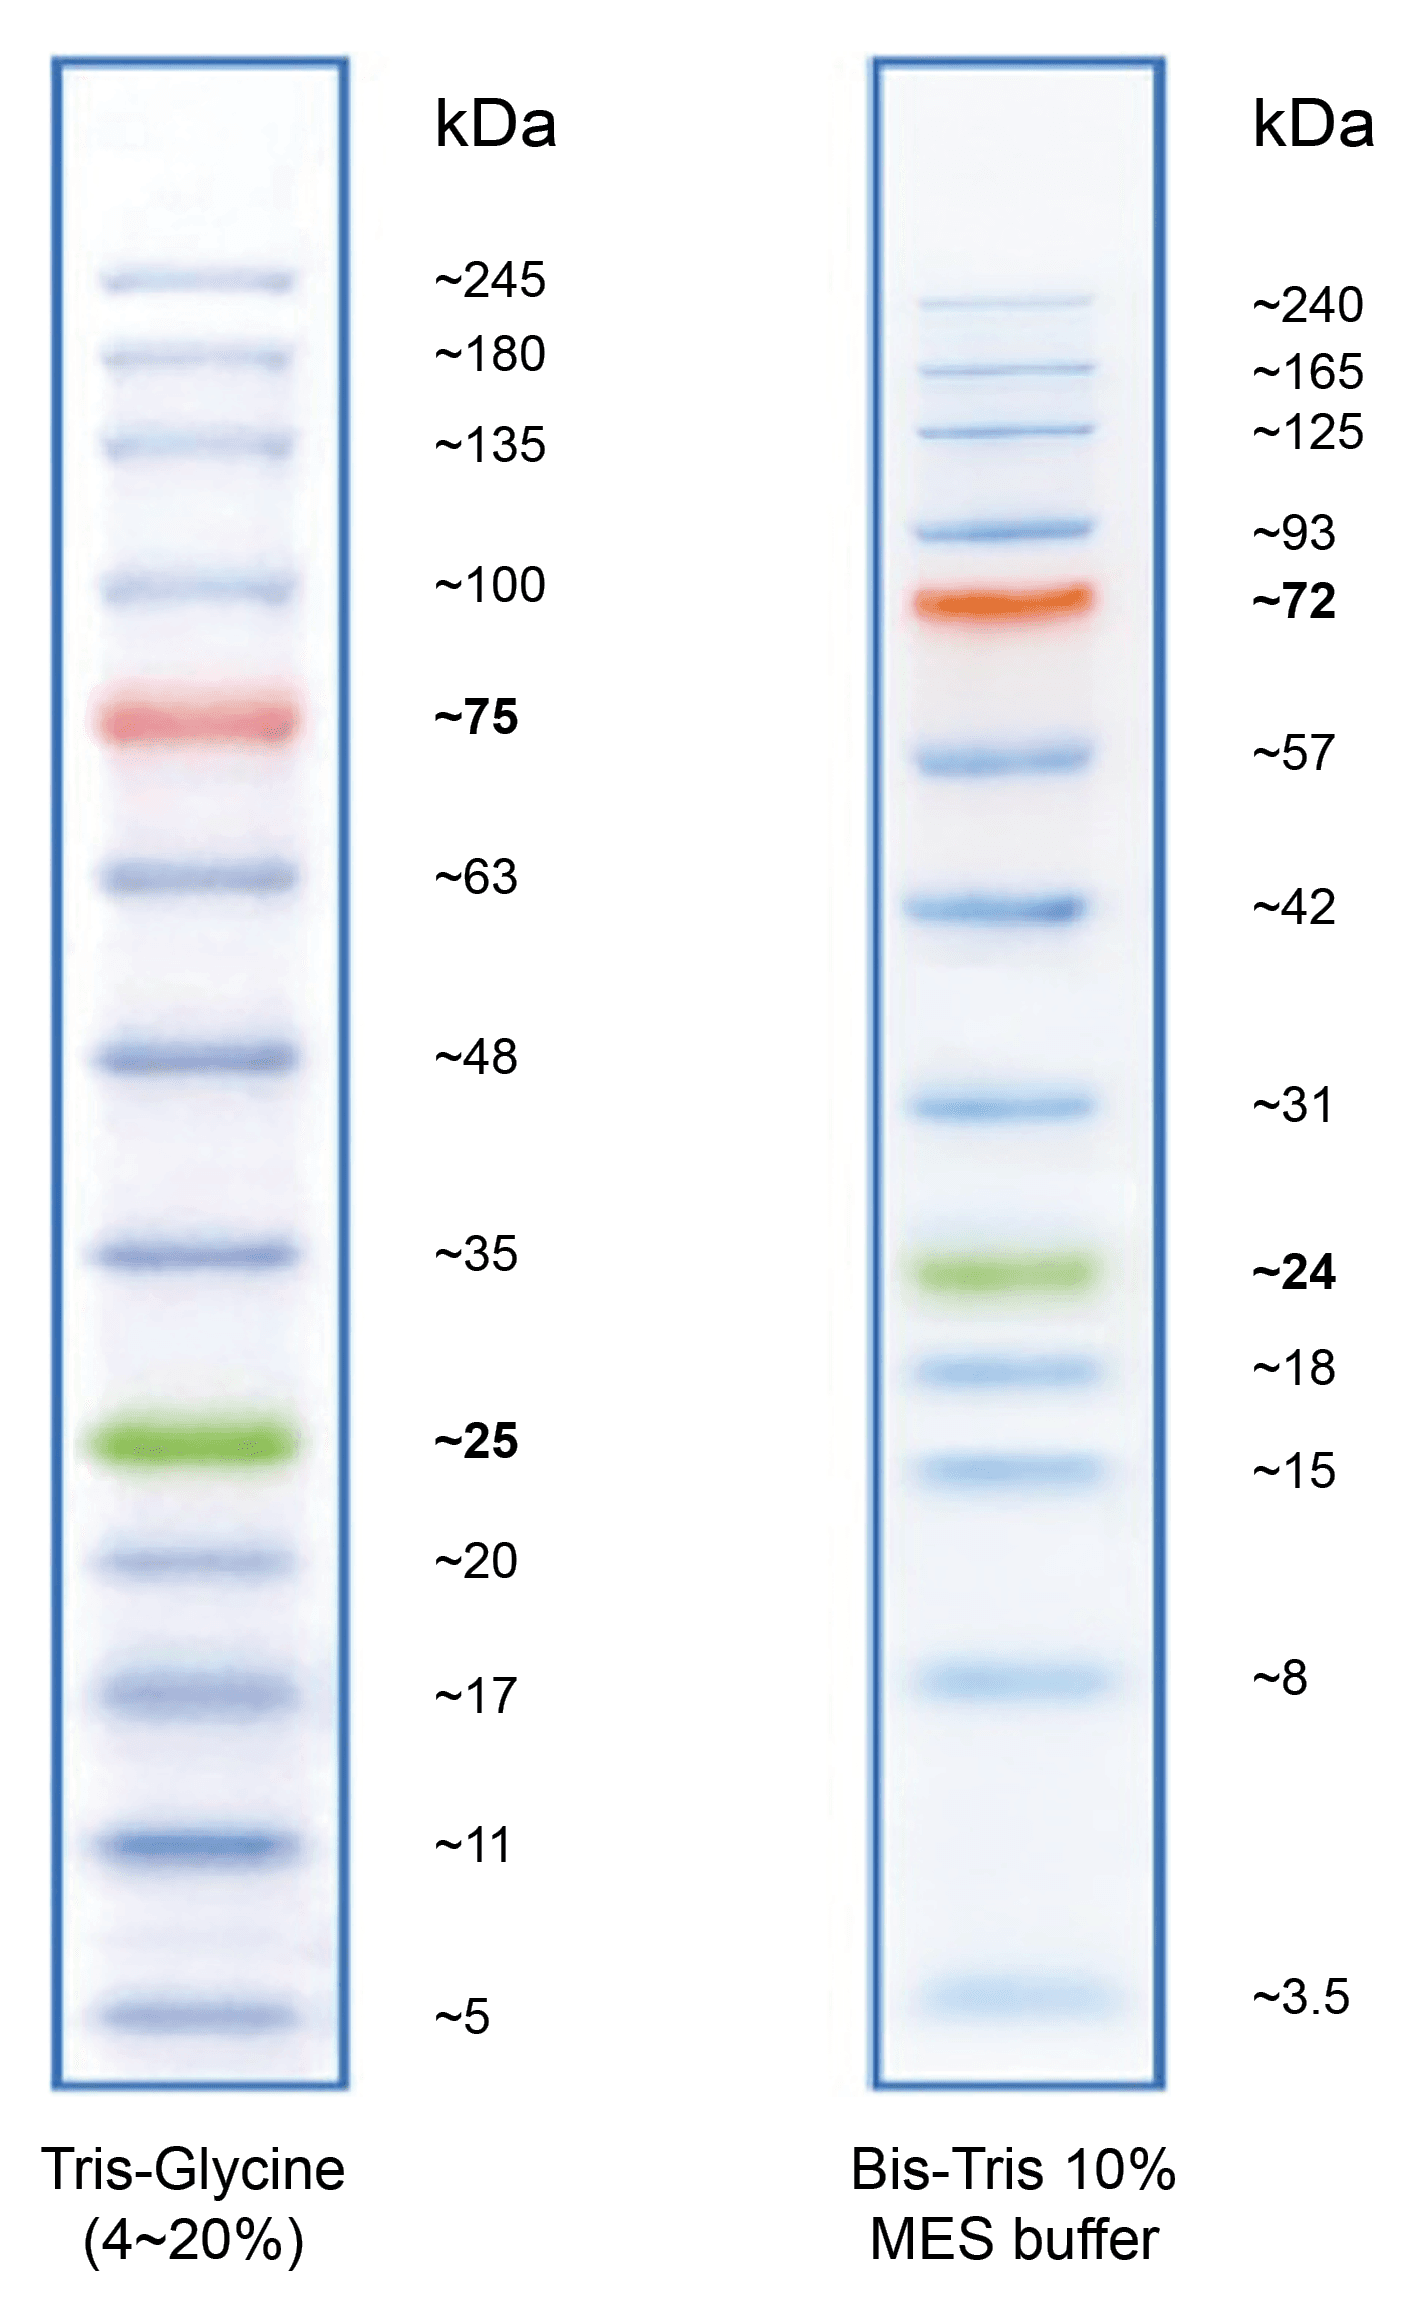 ProLite™ 5-245 kD Protein Ladder.